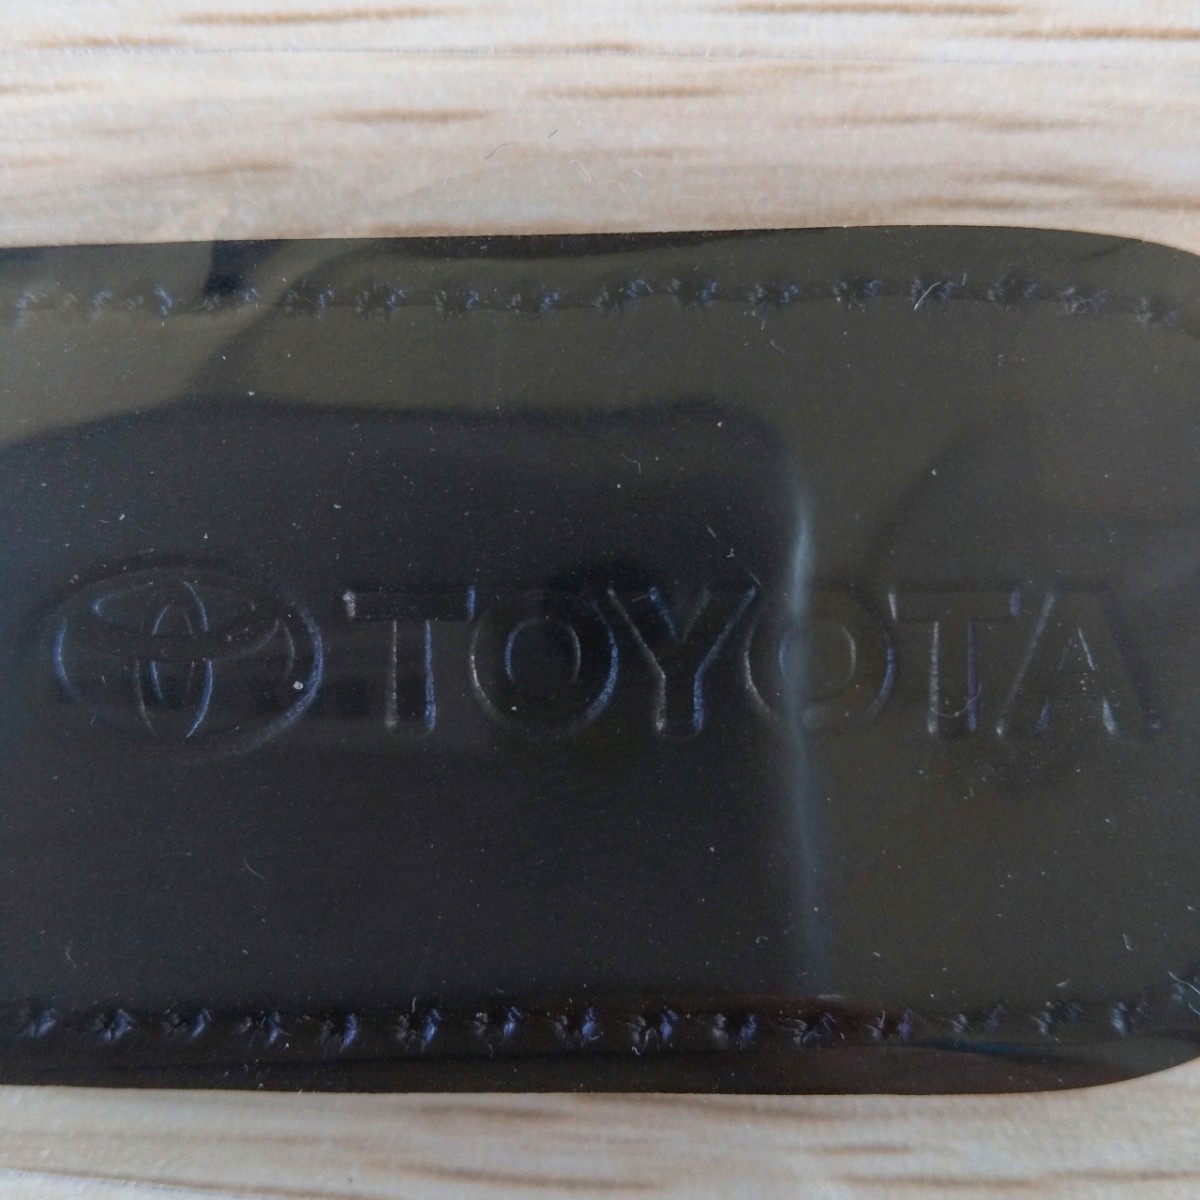 【送料無料】トヨタ博物館限定品 TOYOTA革キーホルダー2個セット